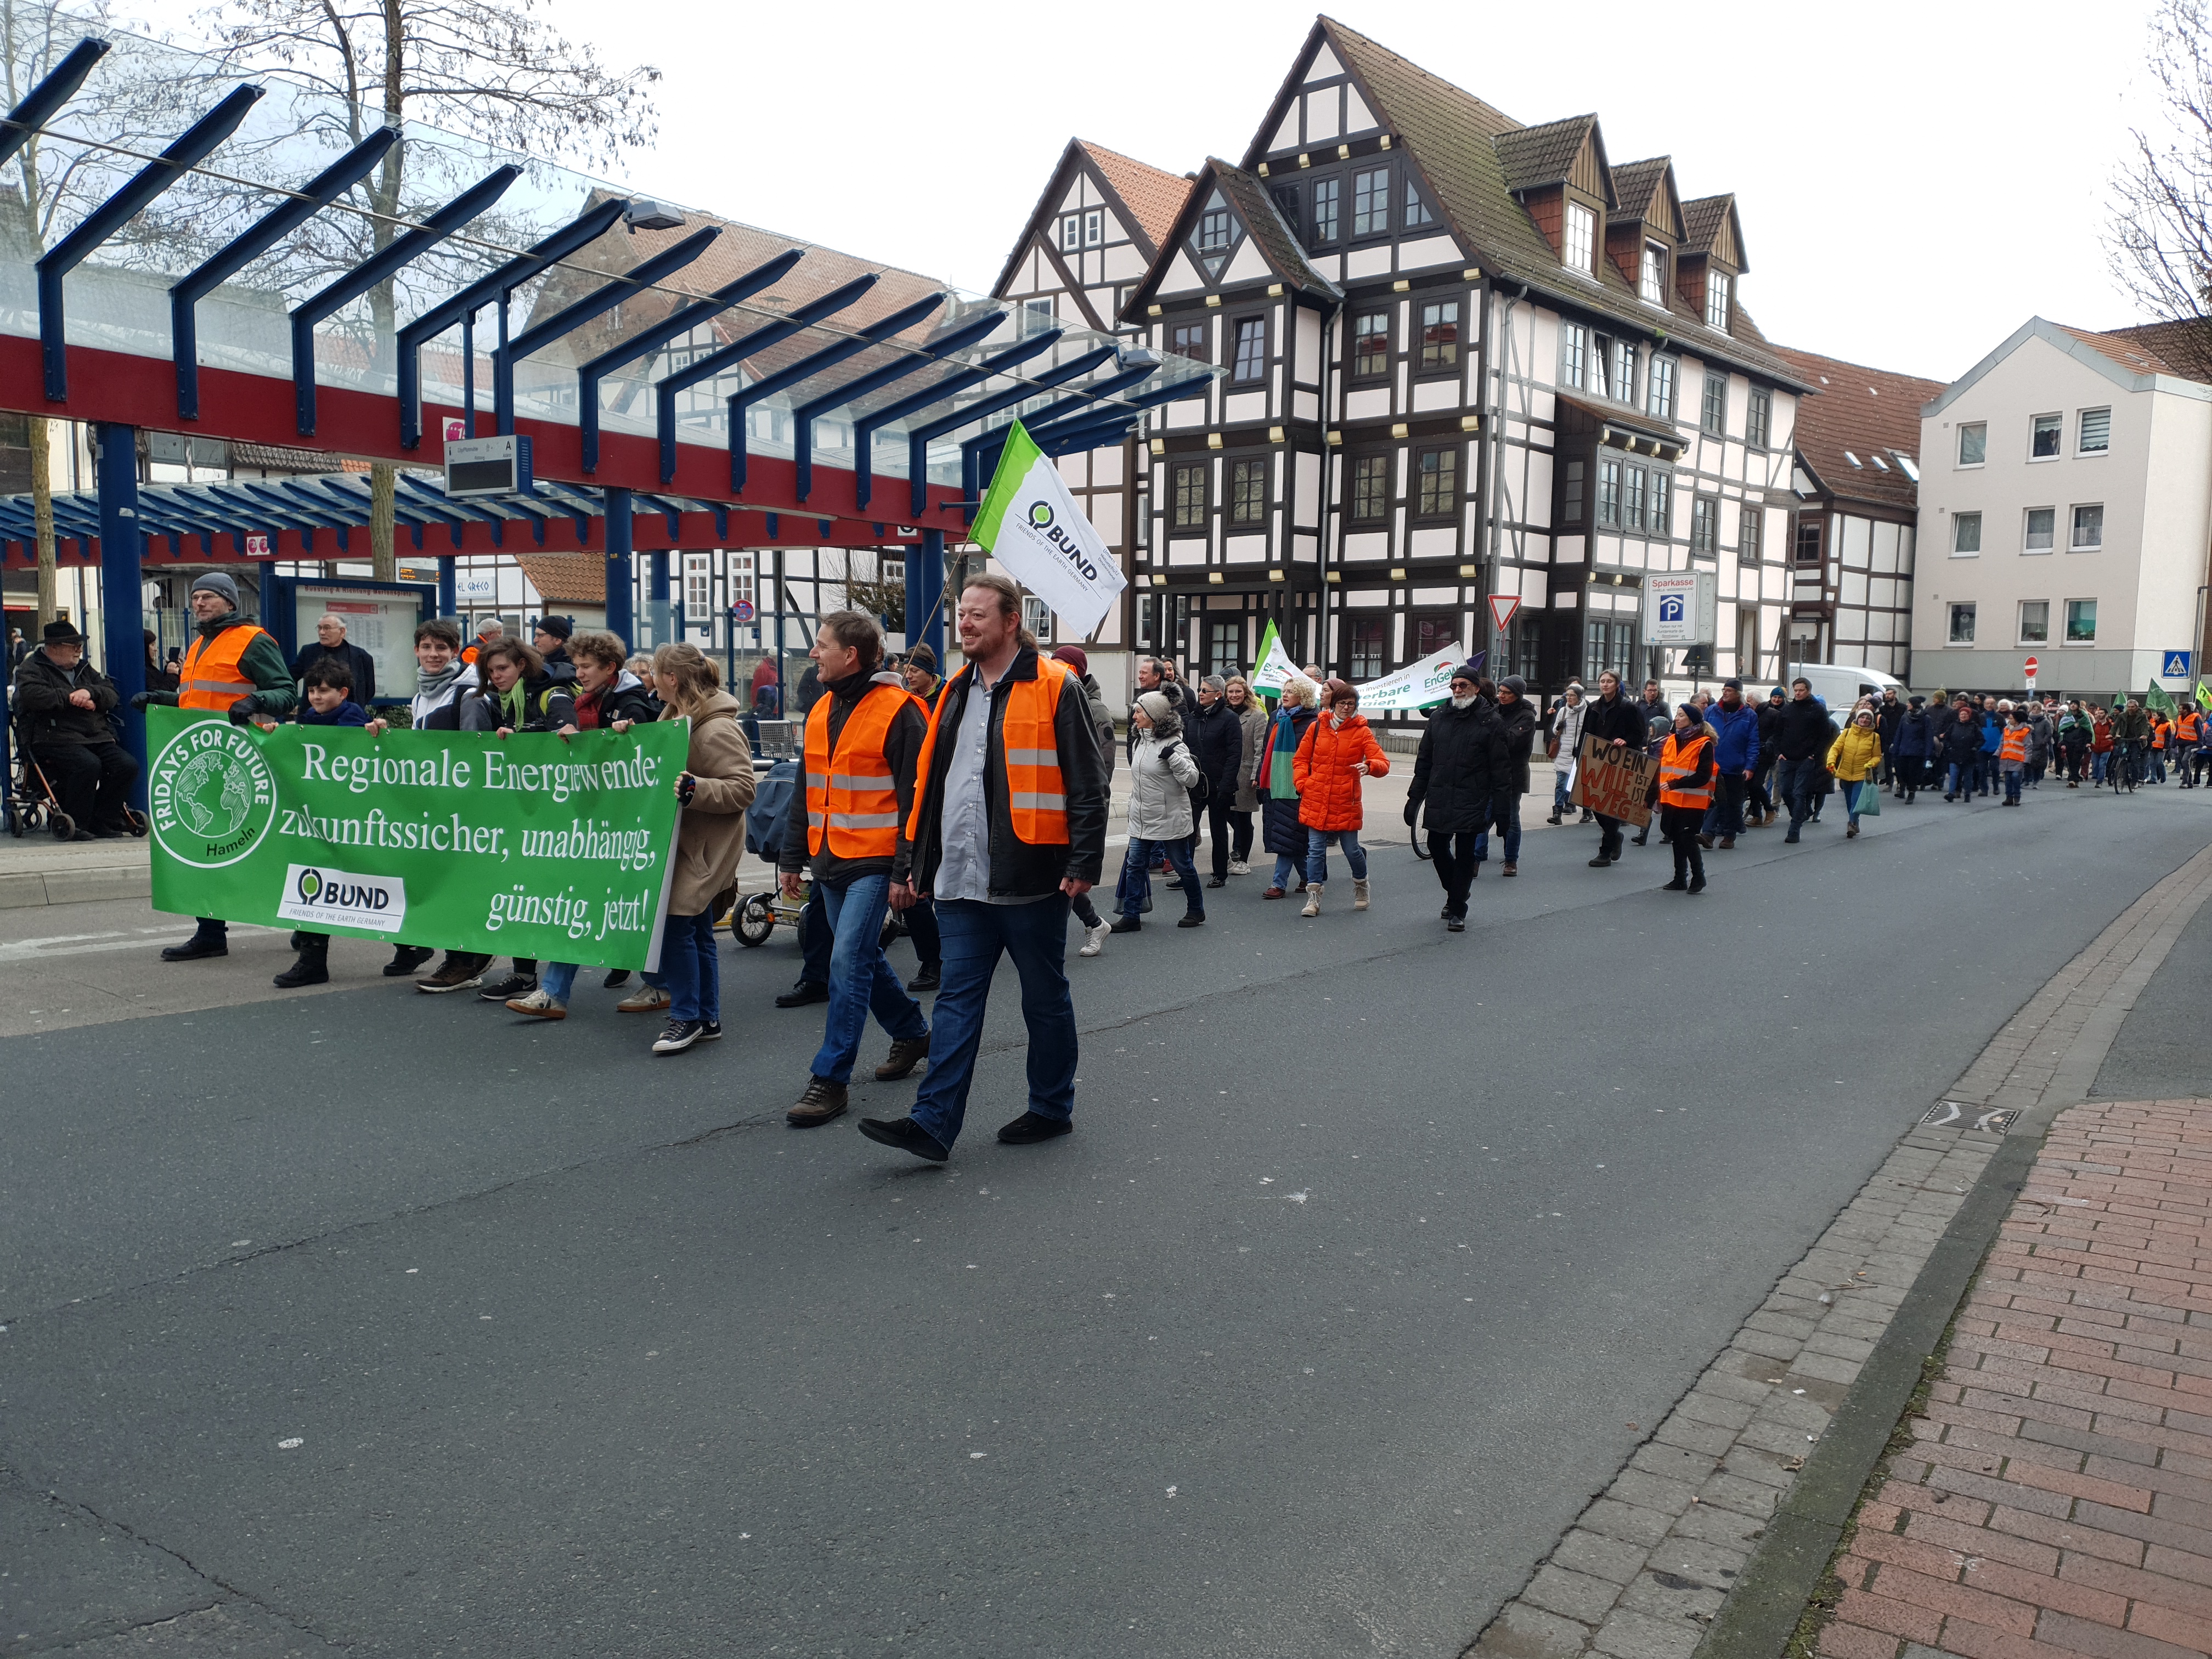 Demozug in Hameln vor dem ZOB. Die vorderste Reihe trägt ein Banner auf dem Steht: Regionale Energiewende zukunftssicher unabhängig günstig jetzt